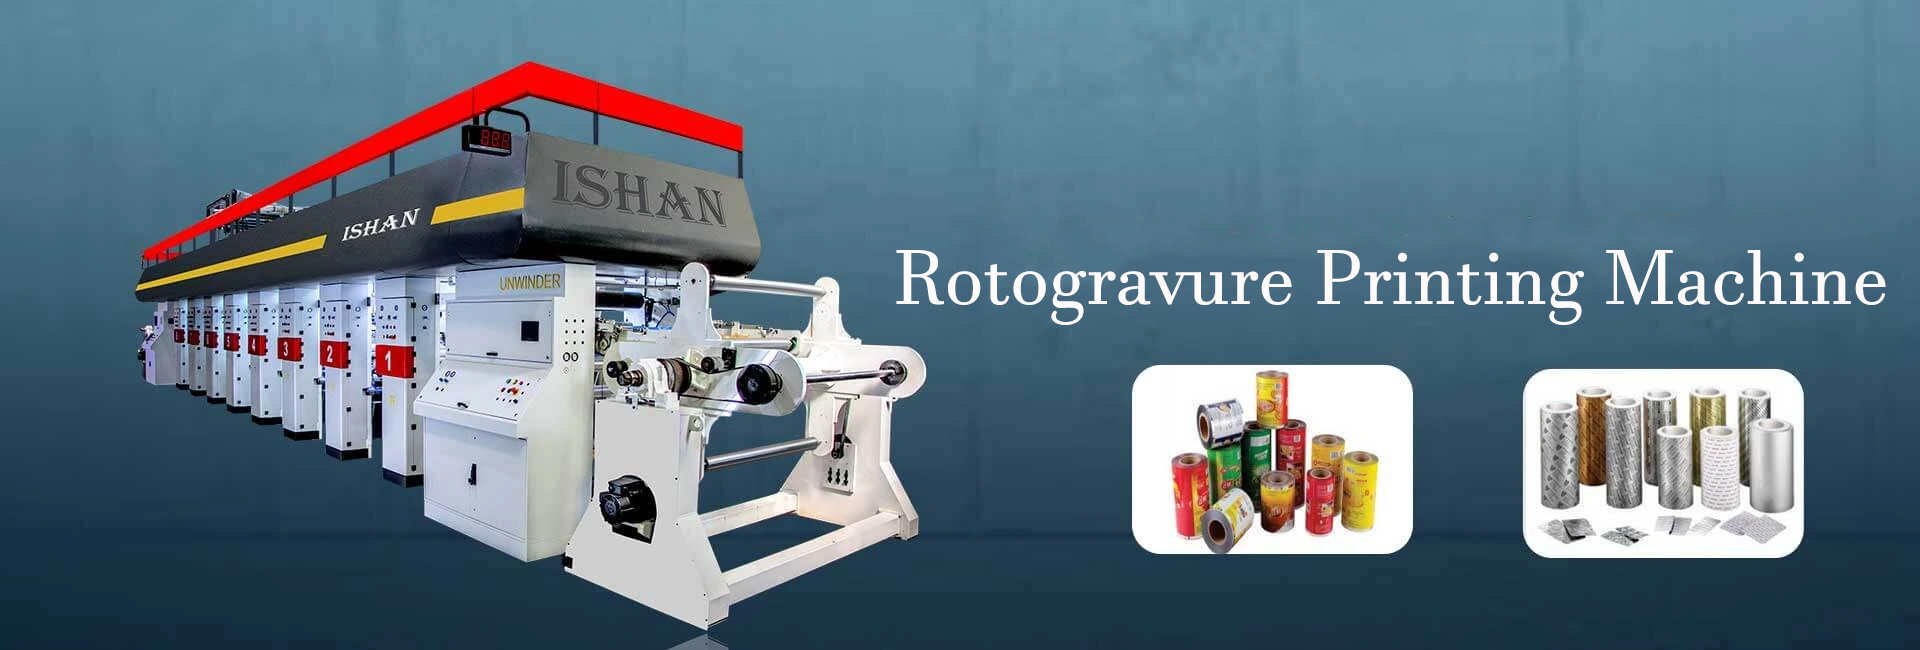 Rotogravure Machine Manufacturer in Gujarat